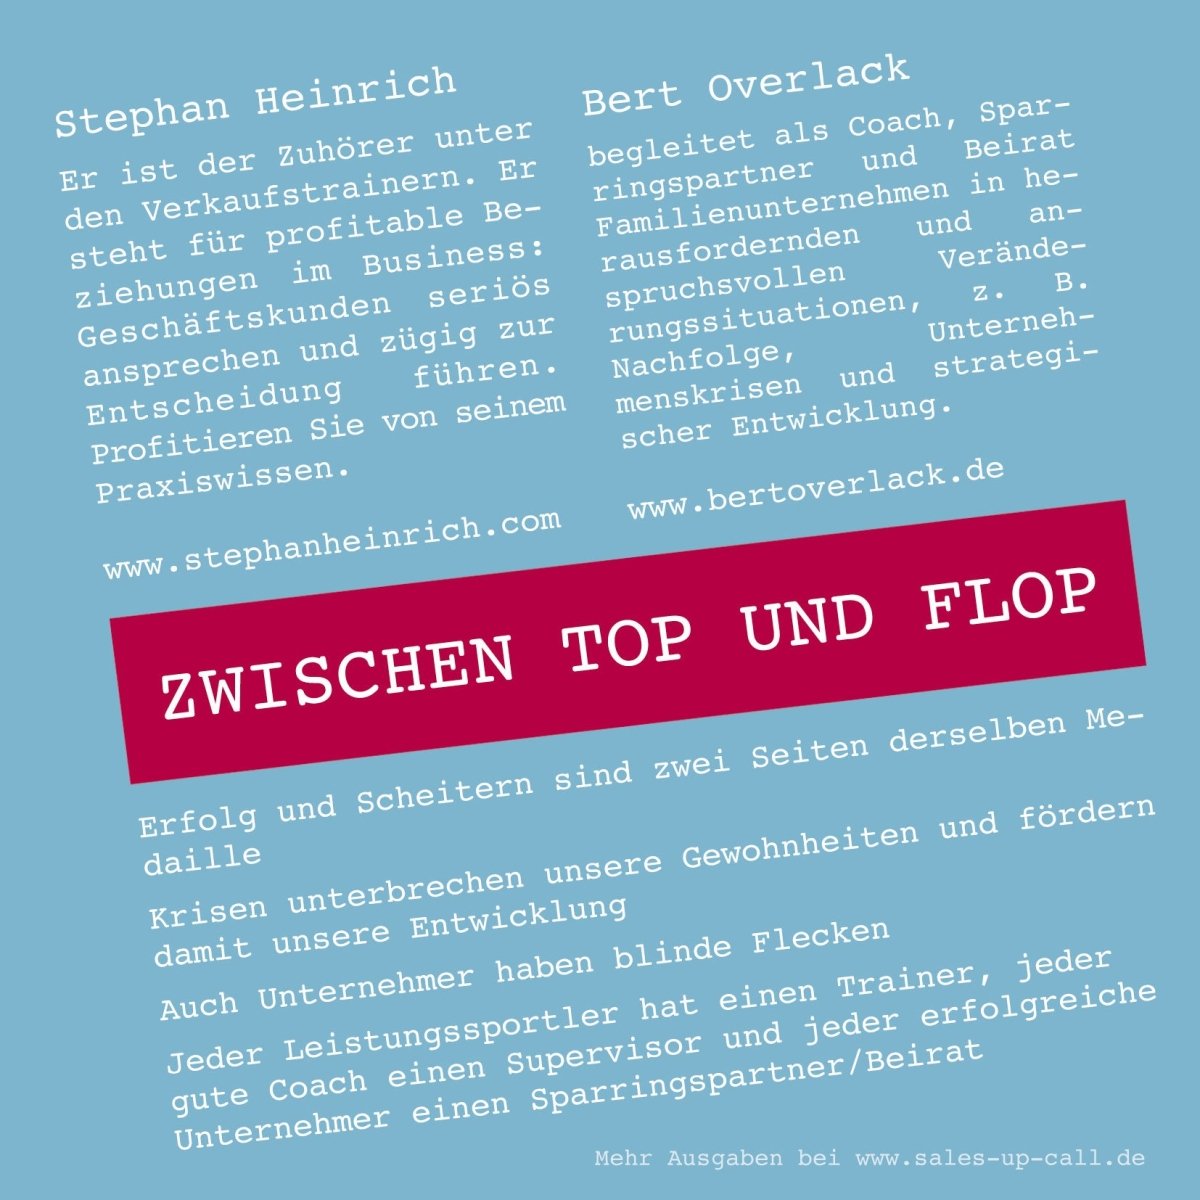 Zwischen Top und Flop - Sales-up-Call - Stephan Heinrich